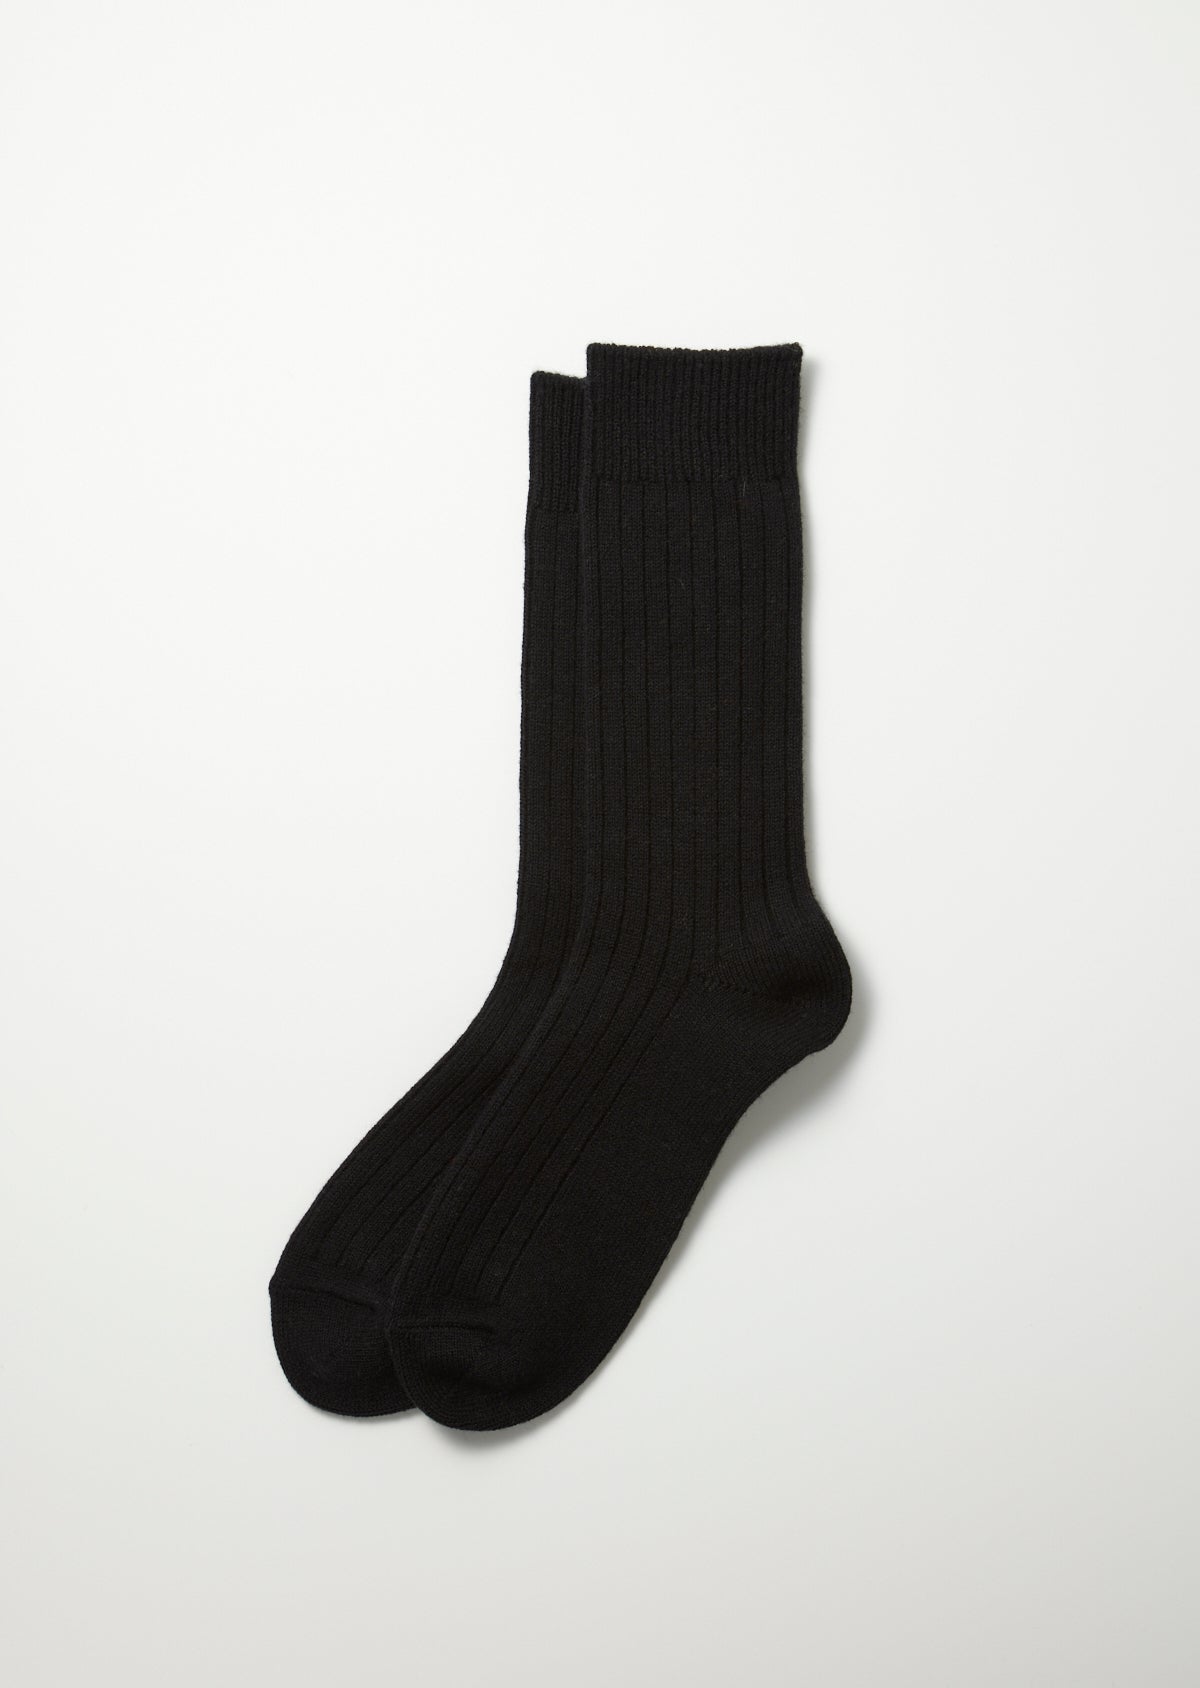 Baumwolle / Wolle Socken - schwarz